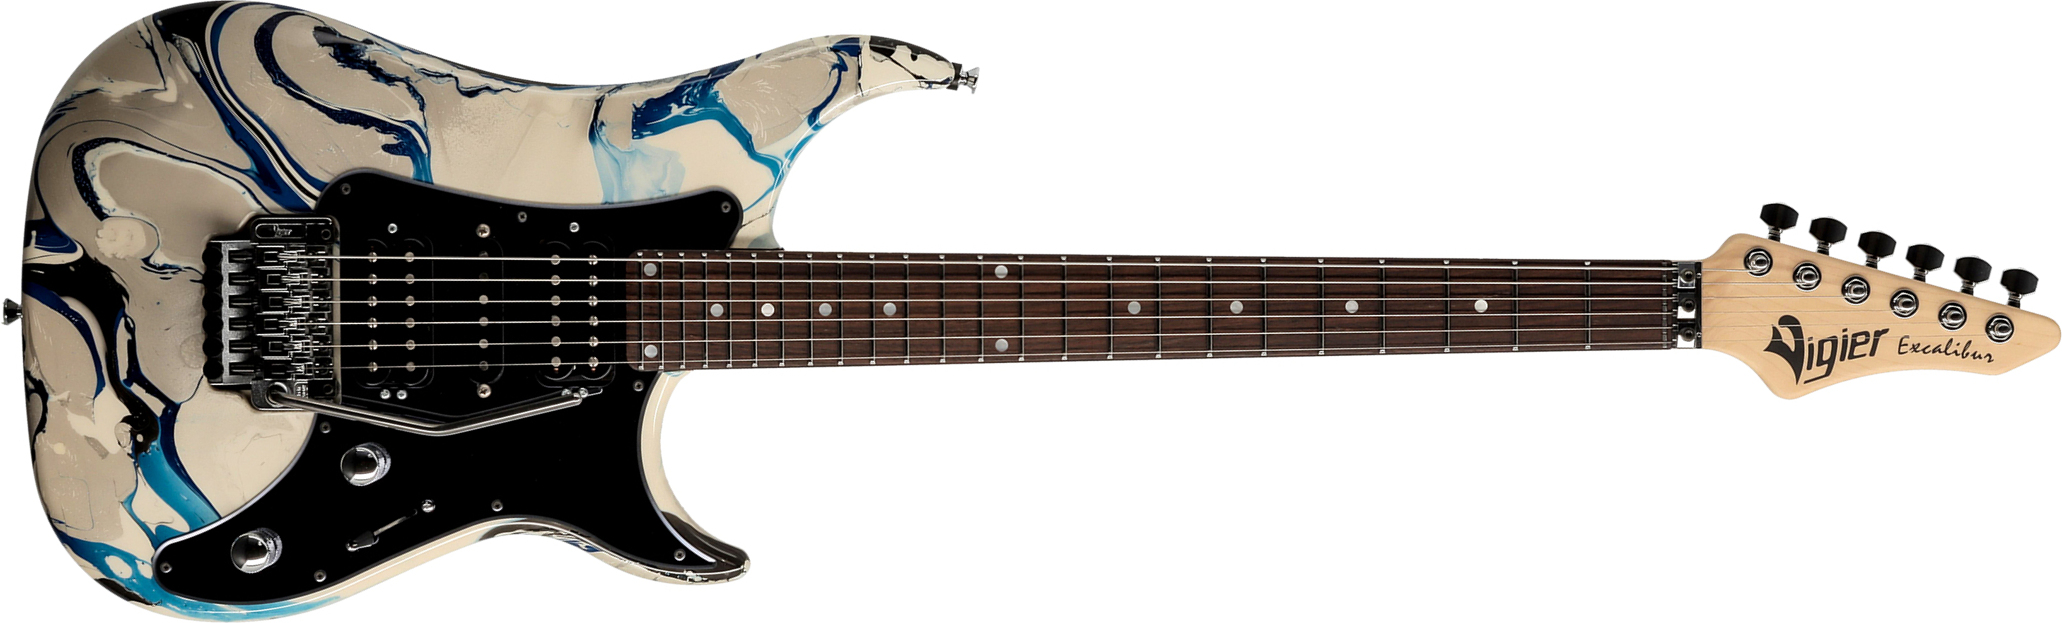 Vigier Excalibur Original Hsh Fr Rw - Rock Art Grey Blue - Guitare Électrique Forme Str - Main picture